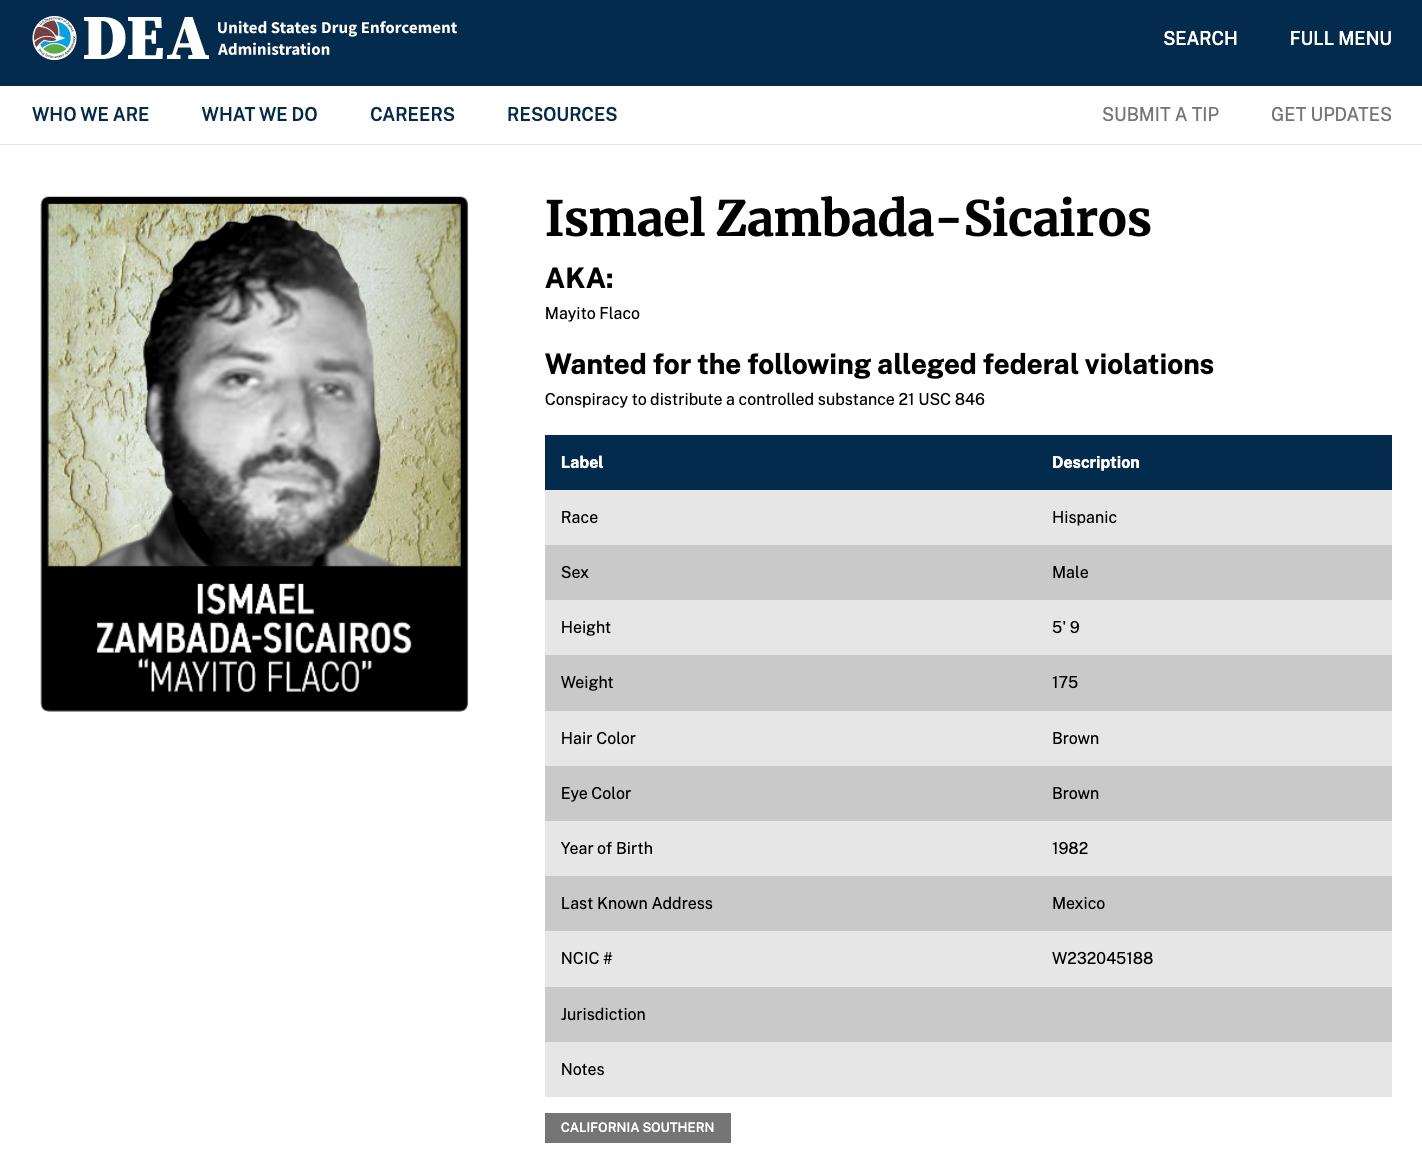 Ismael Zambada Sicairos, alias “El Mayito Flaco”, buscado y acusado por la DEA de conspiración para distribuir sustancias controladas en EE.UU.